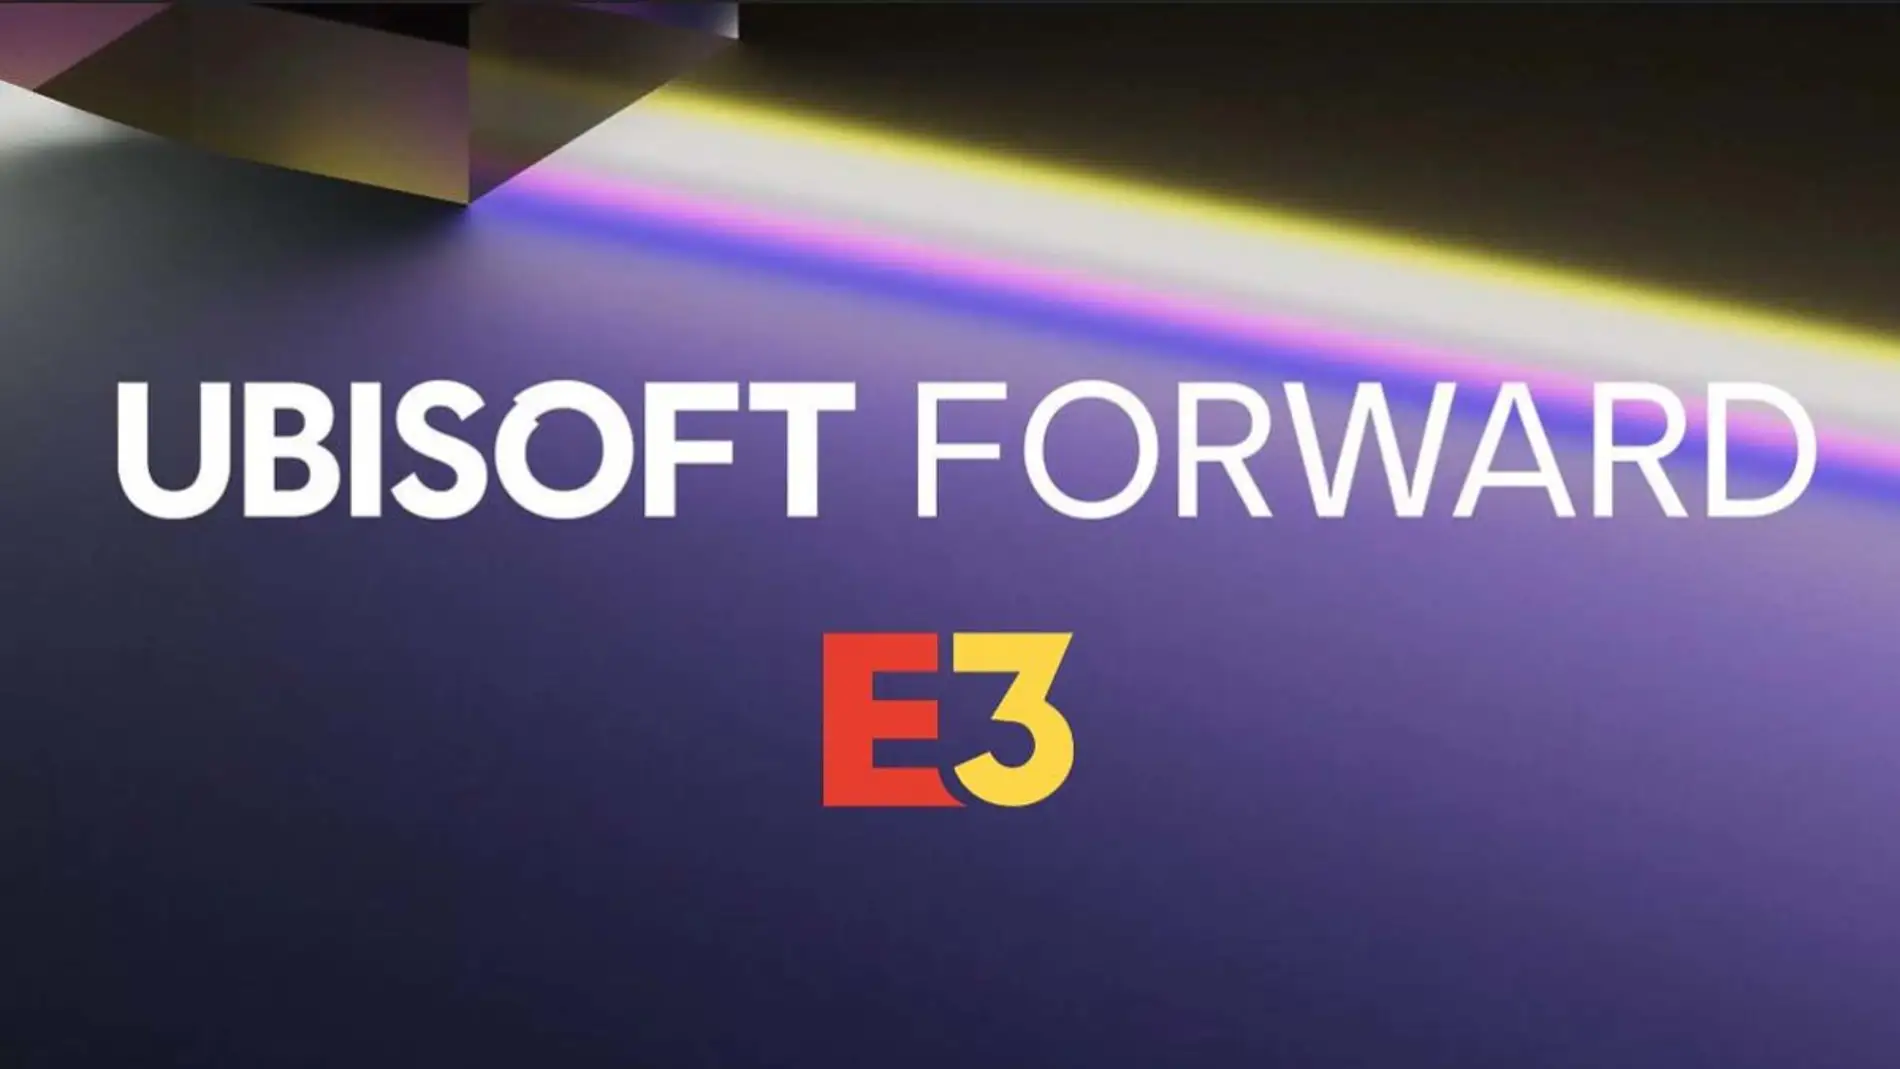 Ubisoft Forward E3 2021